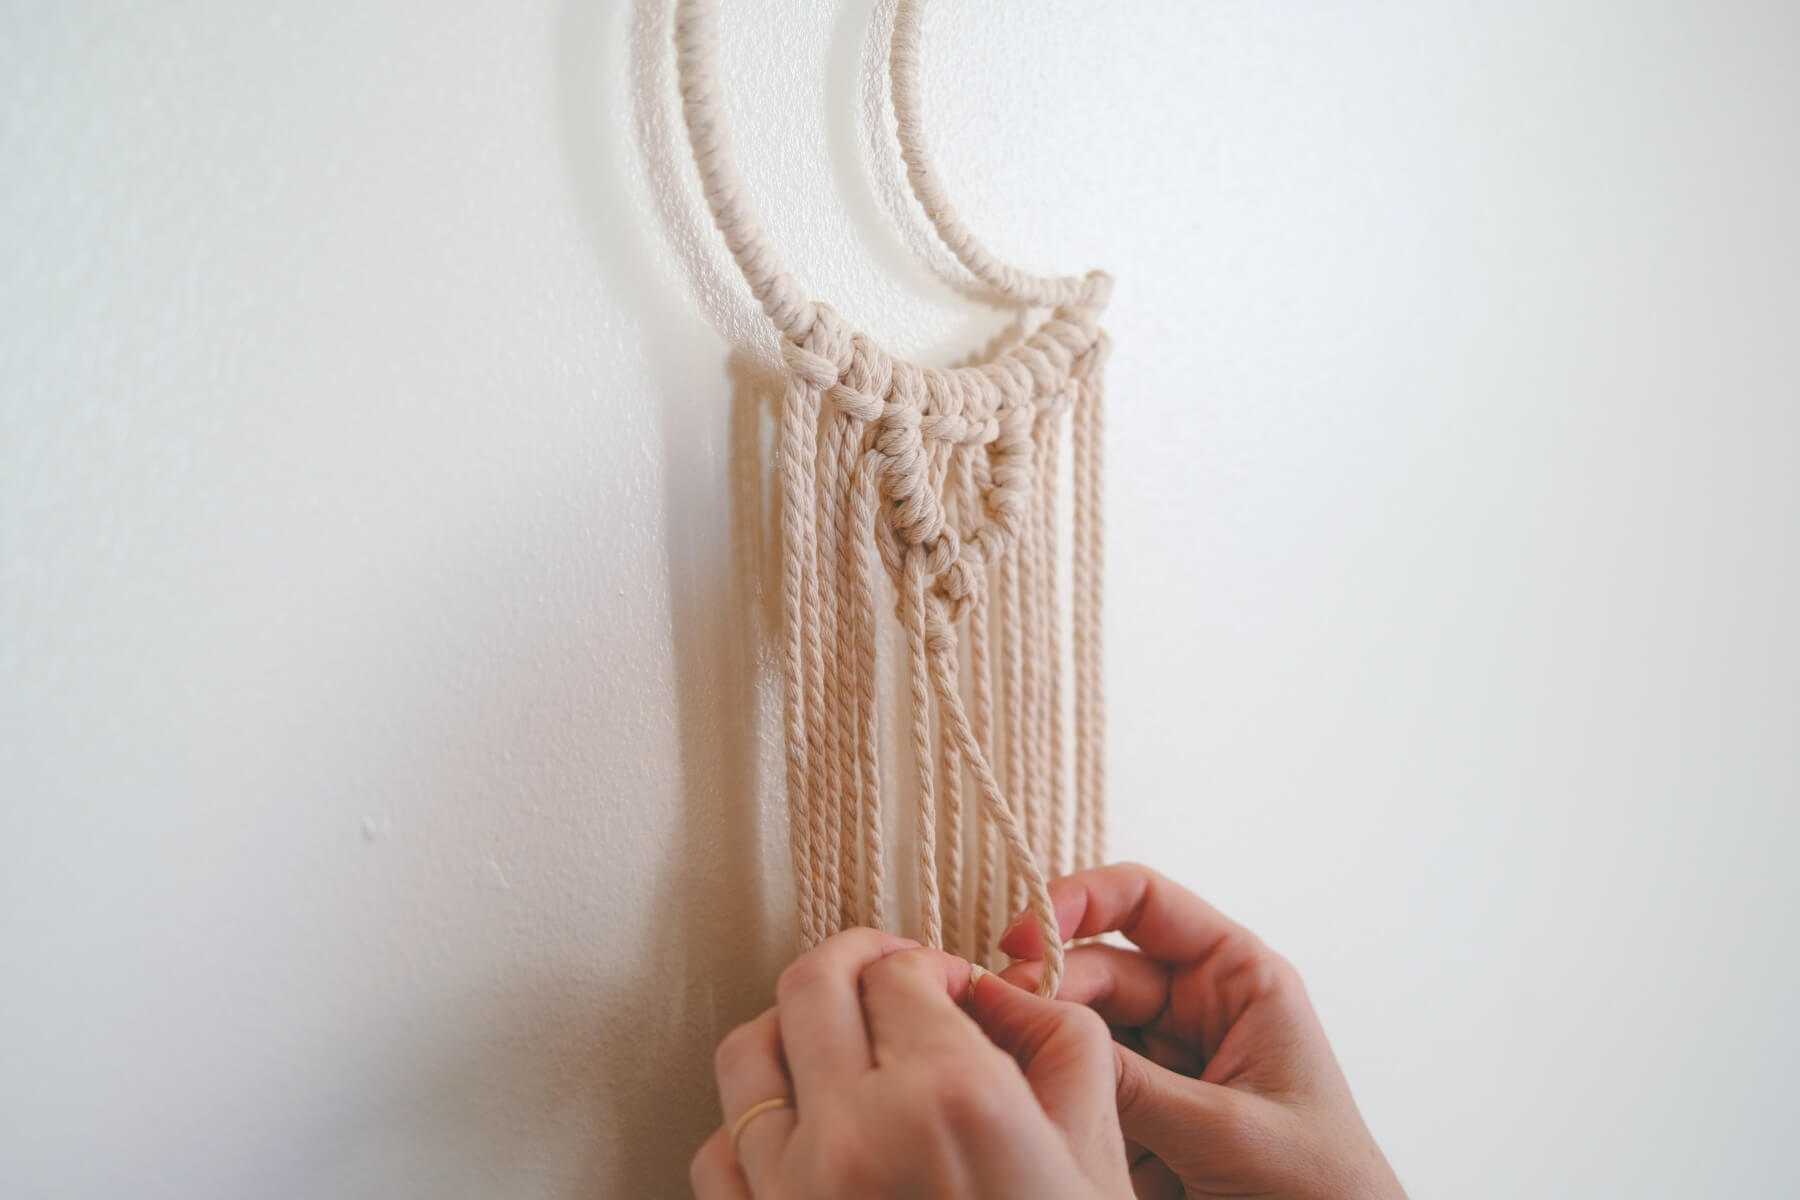 knot making macrame wall hanging tutorial